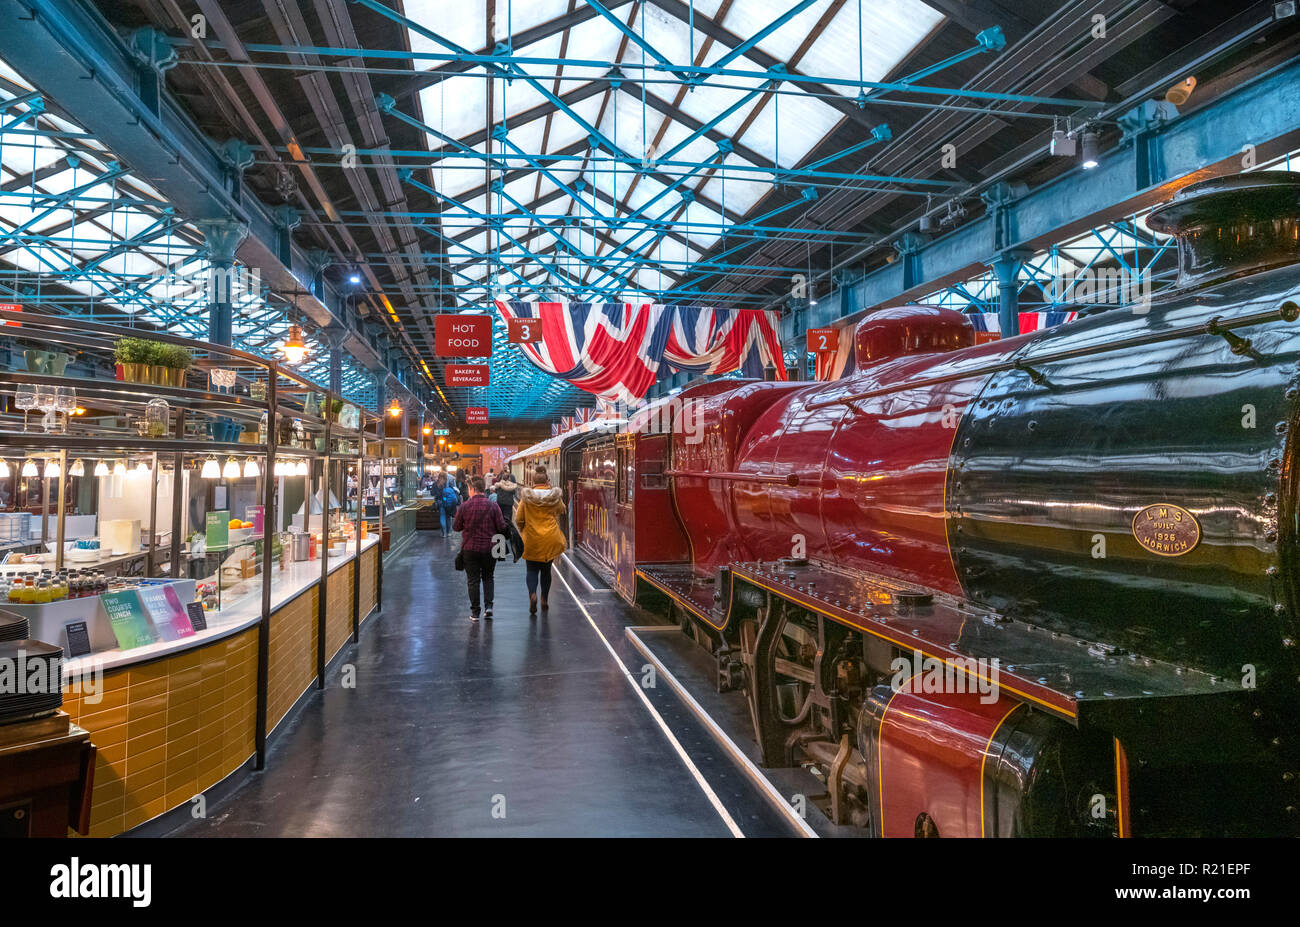 Dampfzug und Cafes in der Bahnhofshalle, National Railway Museum, York, North Yorkshire, England, Großbritannien Stockfoto